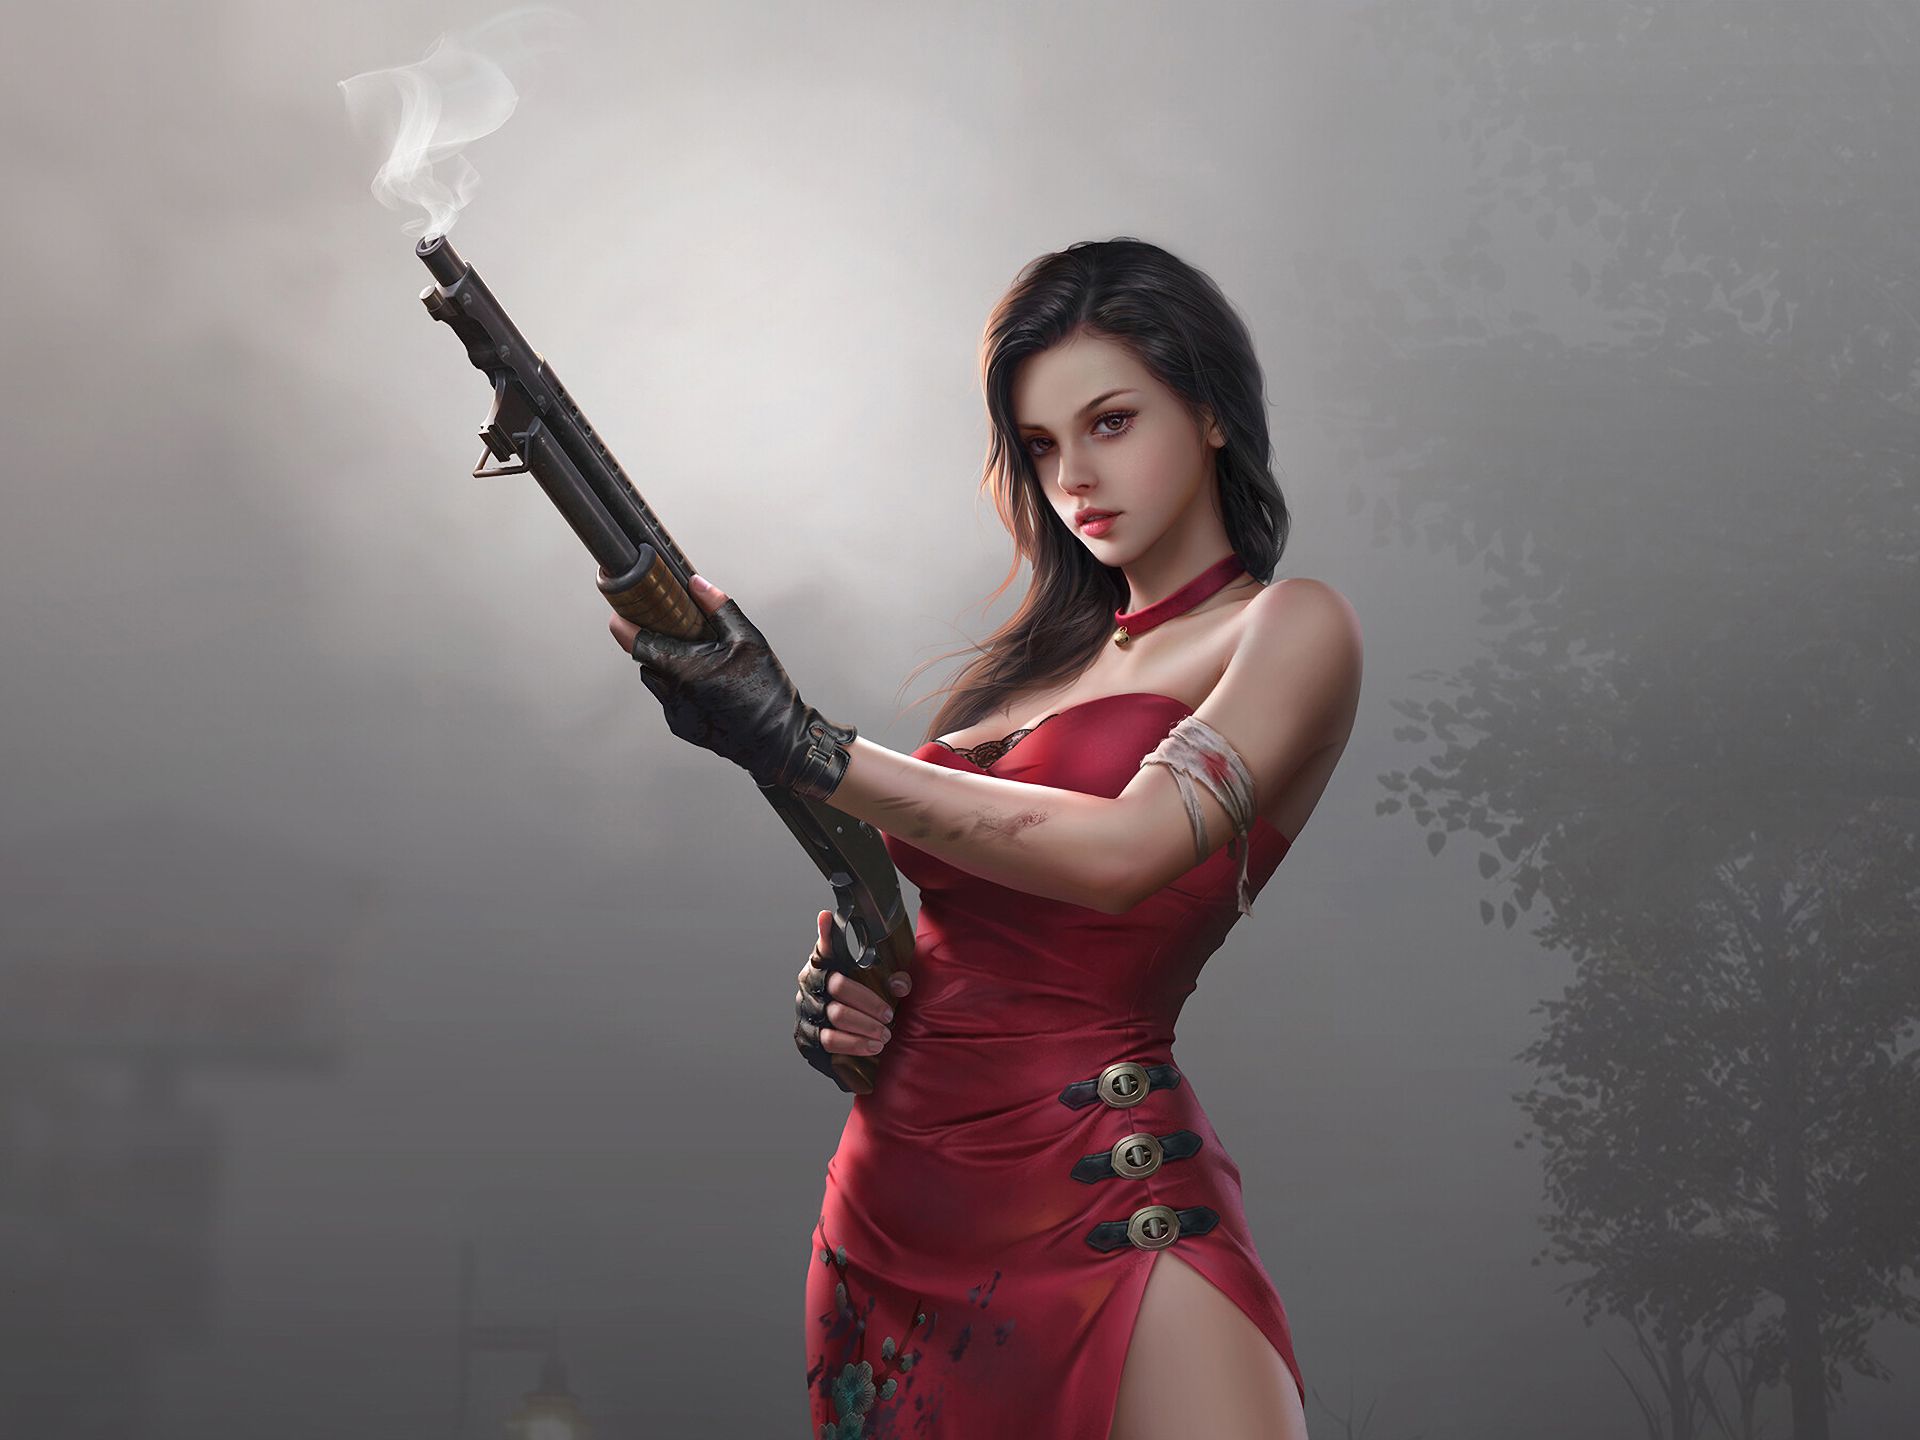 Descarga gratuita de fondo de pantalla para móvil de Fantasía, Pistola, Mujeres Guerrera, Vestido Rojo.